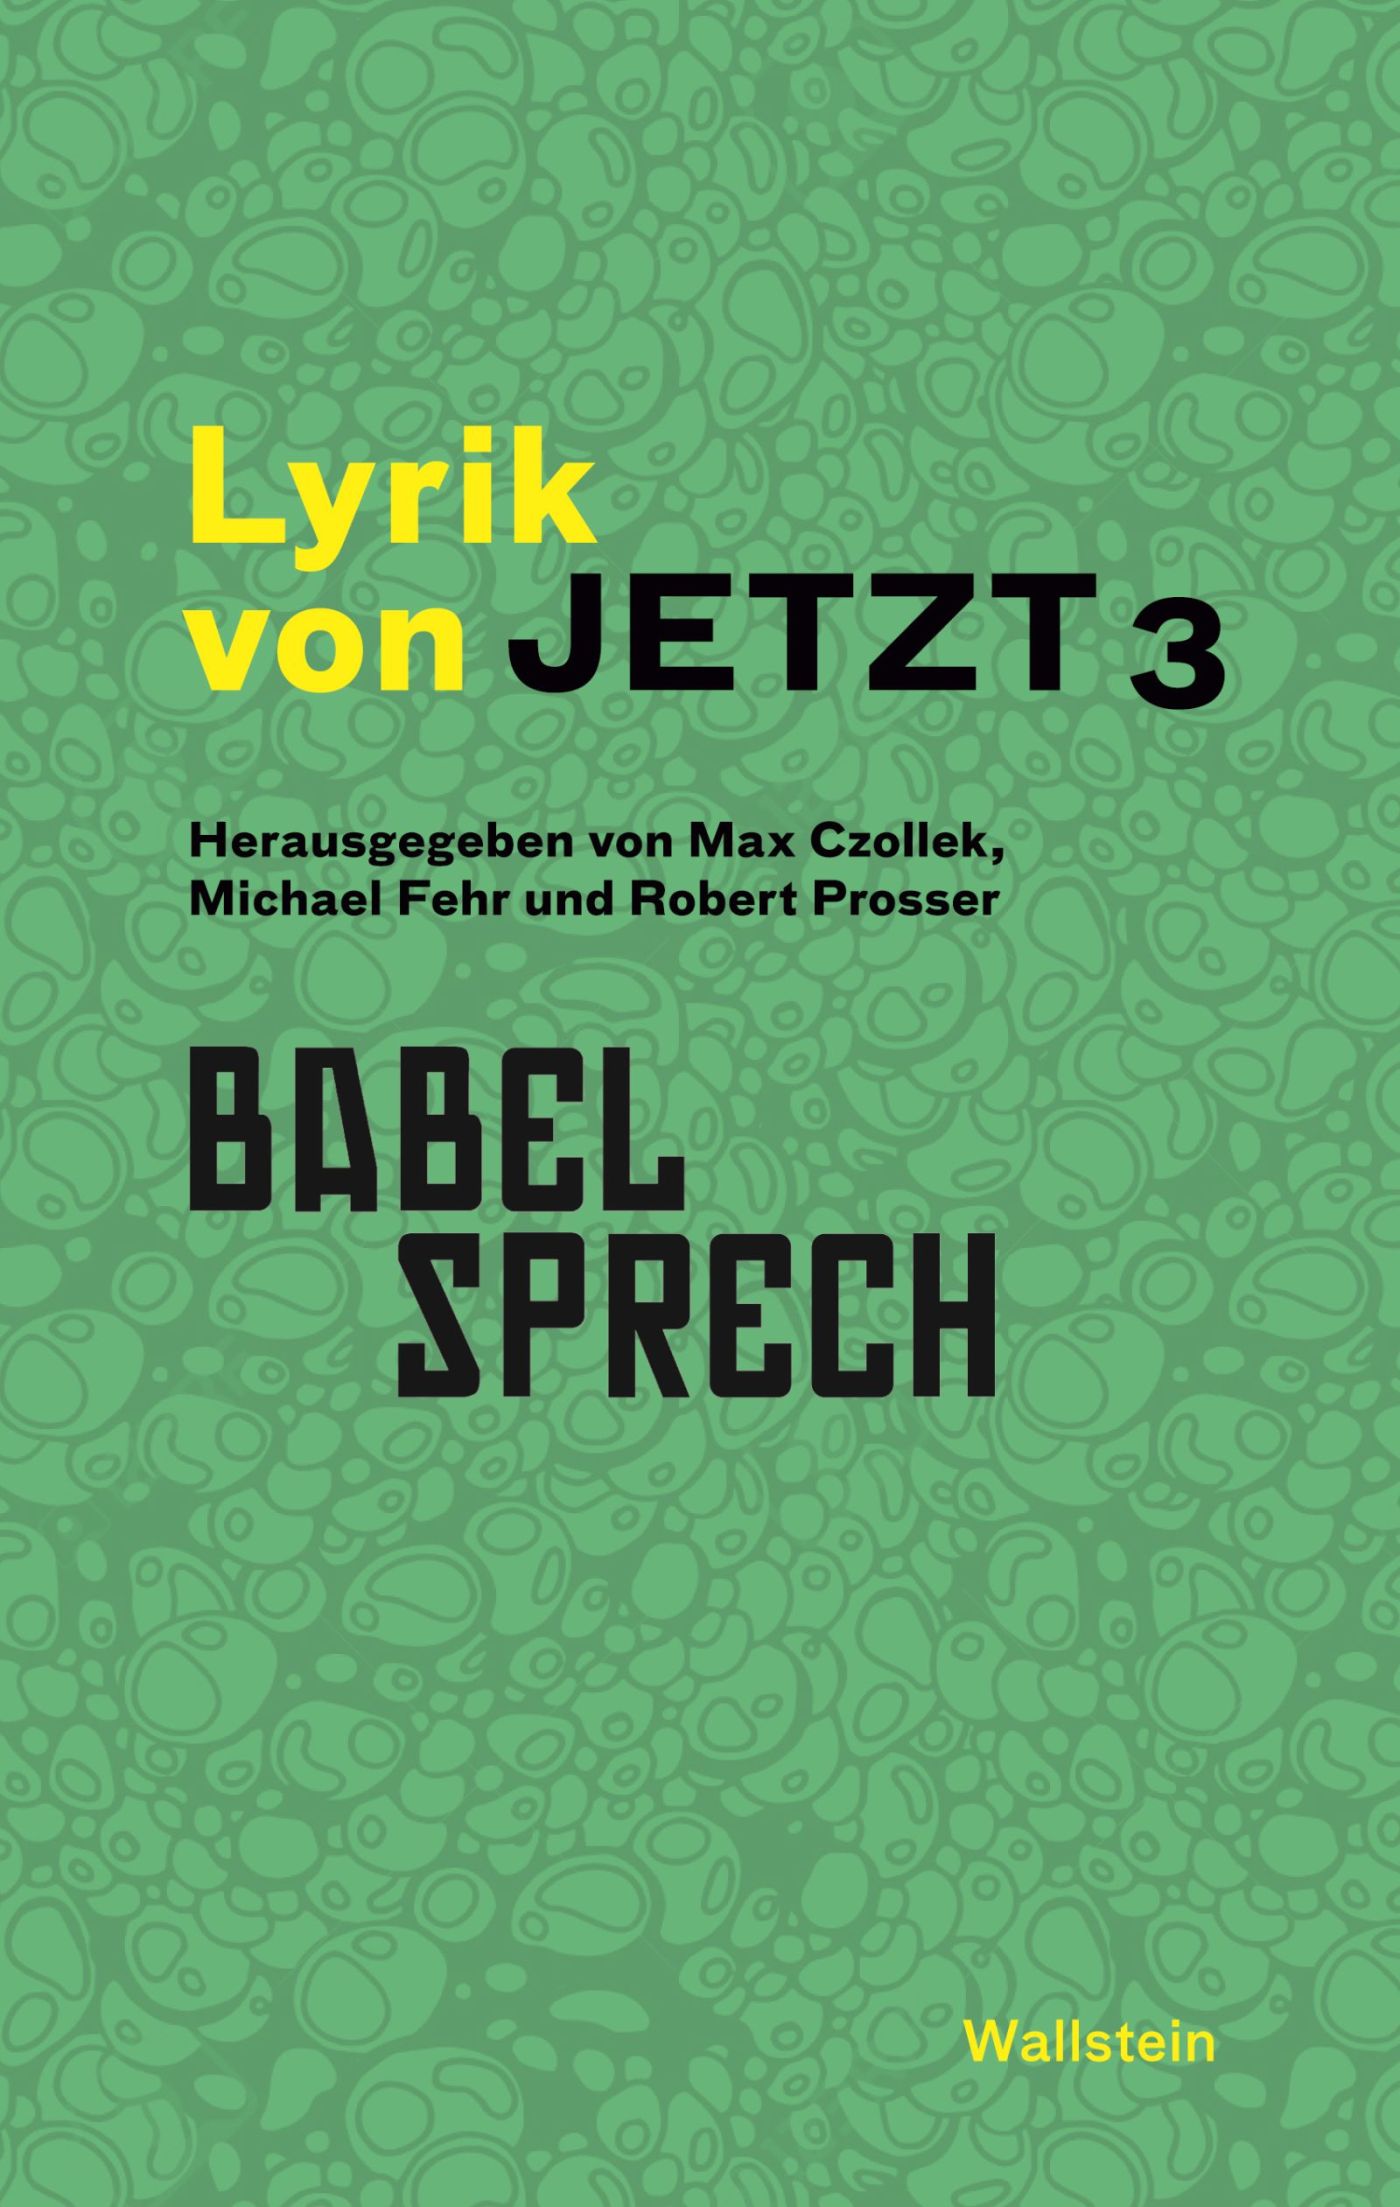 Max Czollek, Michael Fehr und Robert Prosser (Hrsg.): Lyrik von Jetzt 3: Babelsprech